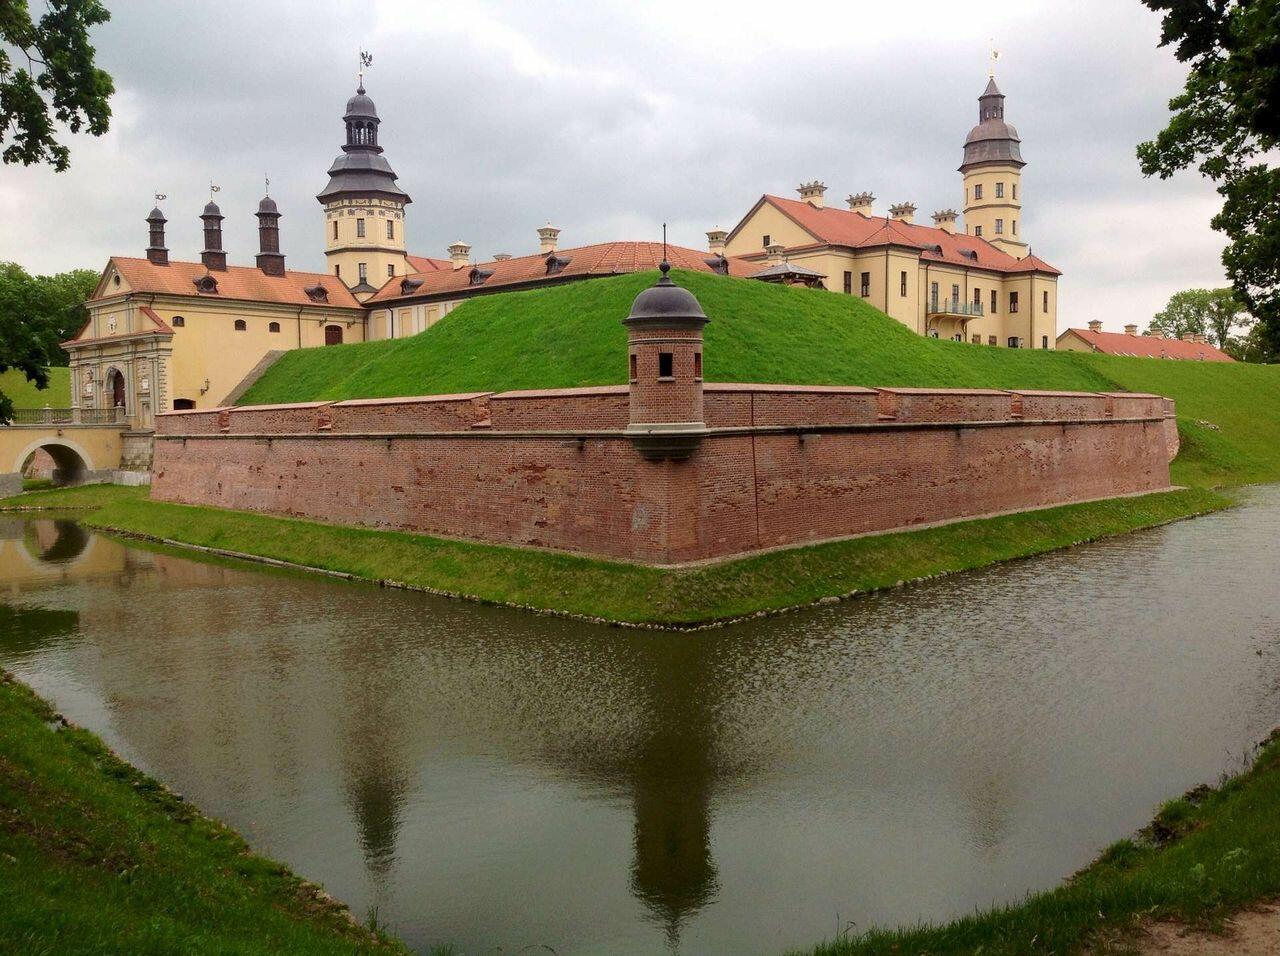 Несвижский замок (посв. польскому королю Сигизмунду и Барбаре Радзивилл)